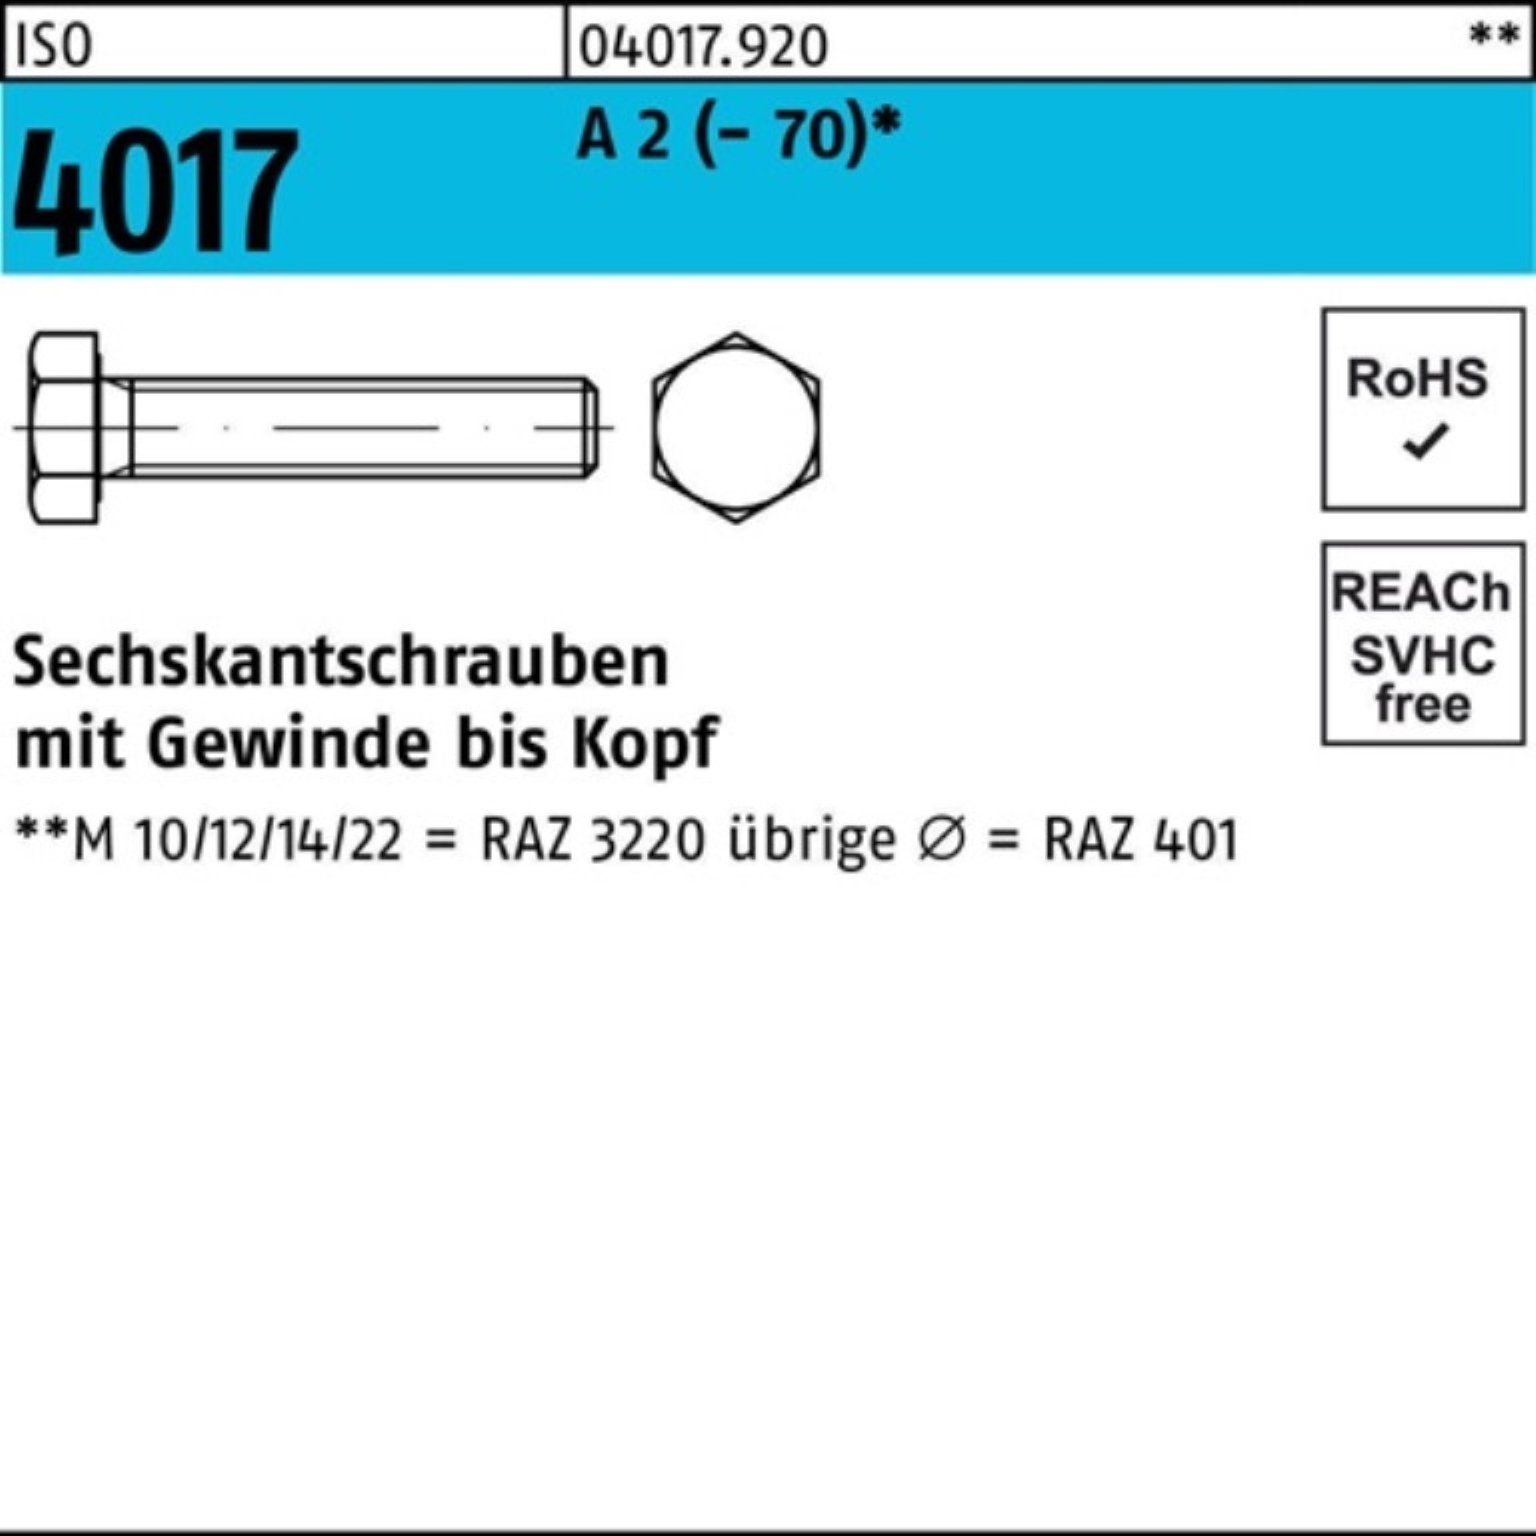 Bufab Sechskantschraube 100er Pack Sechskantschraube ISO 4017 VG M8x 40 A 2 (70) 100 Stück | Schrauben